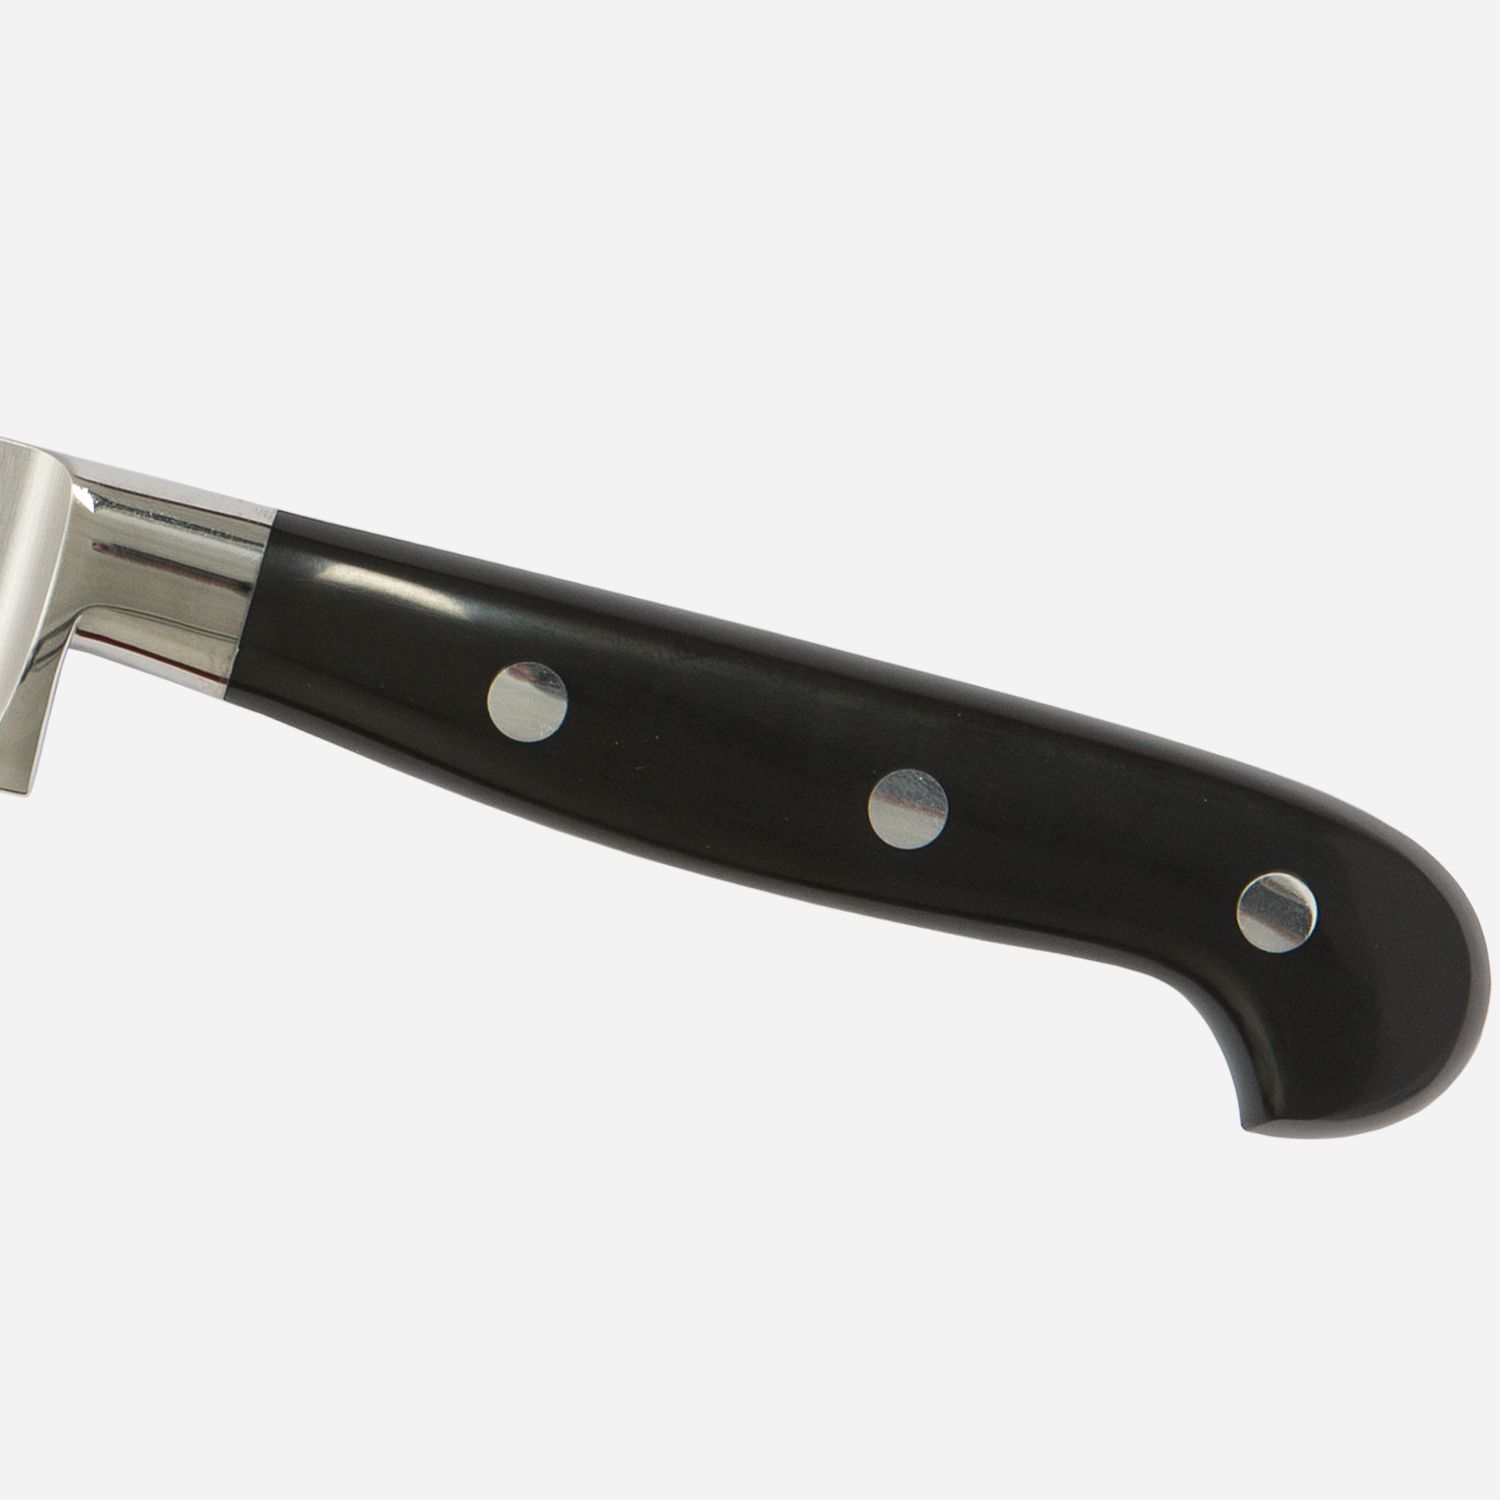 Boning knife cm.16  Stainless Steel Berkel Adhoc Handle Glossy Black Resin